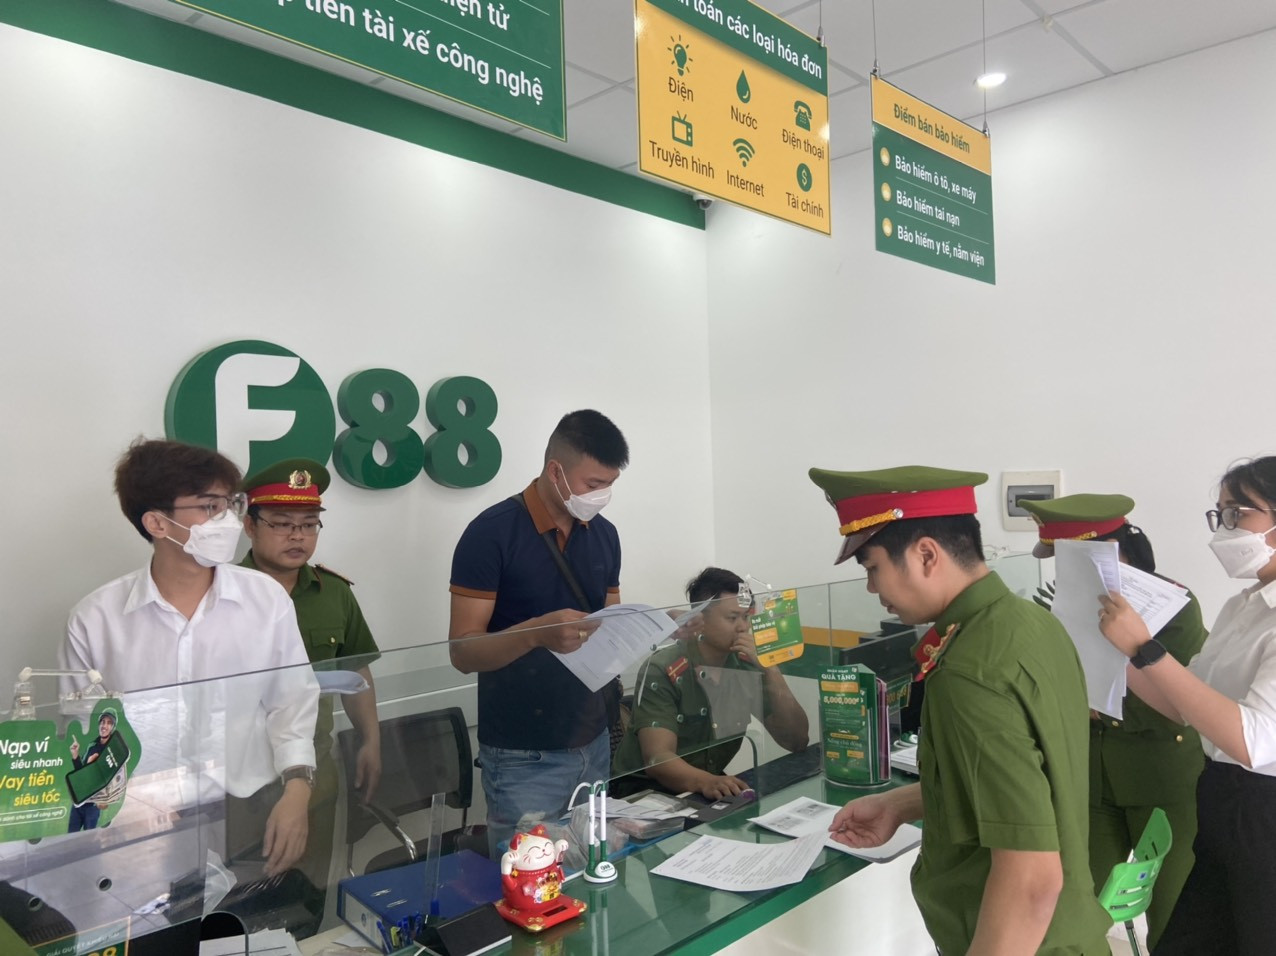 Đà Nẵng: Công an tạm giữ hàng nghìn hồ sơ tại các cơ sở cầm cố, cho vay tín dụng F88